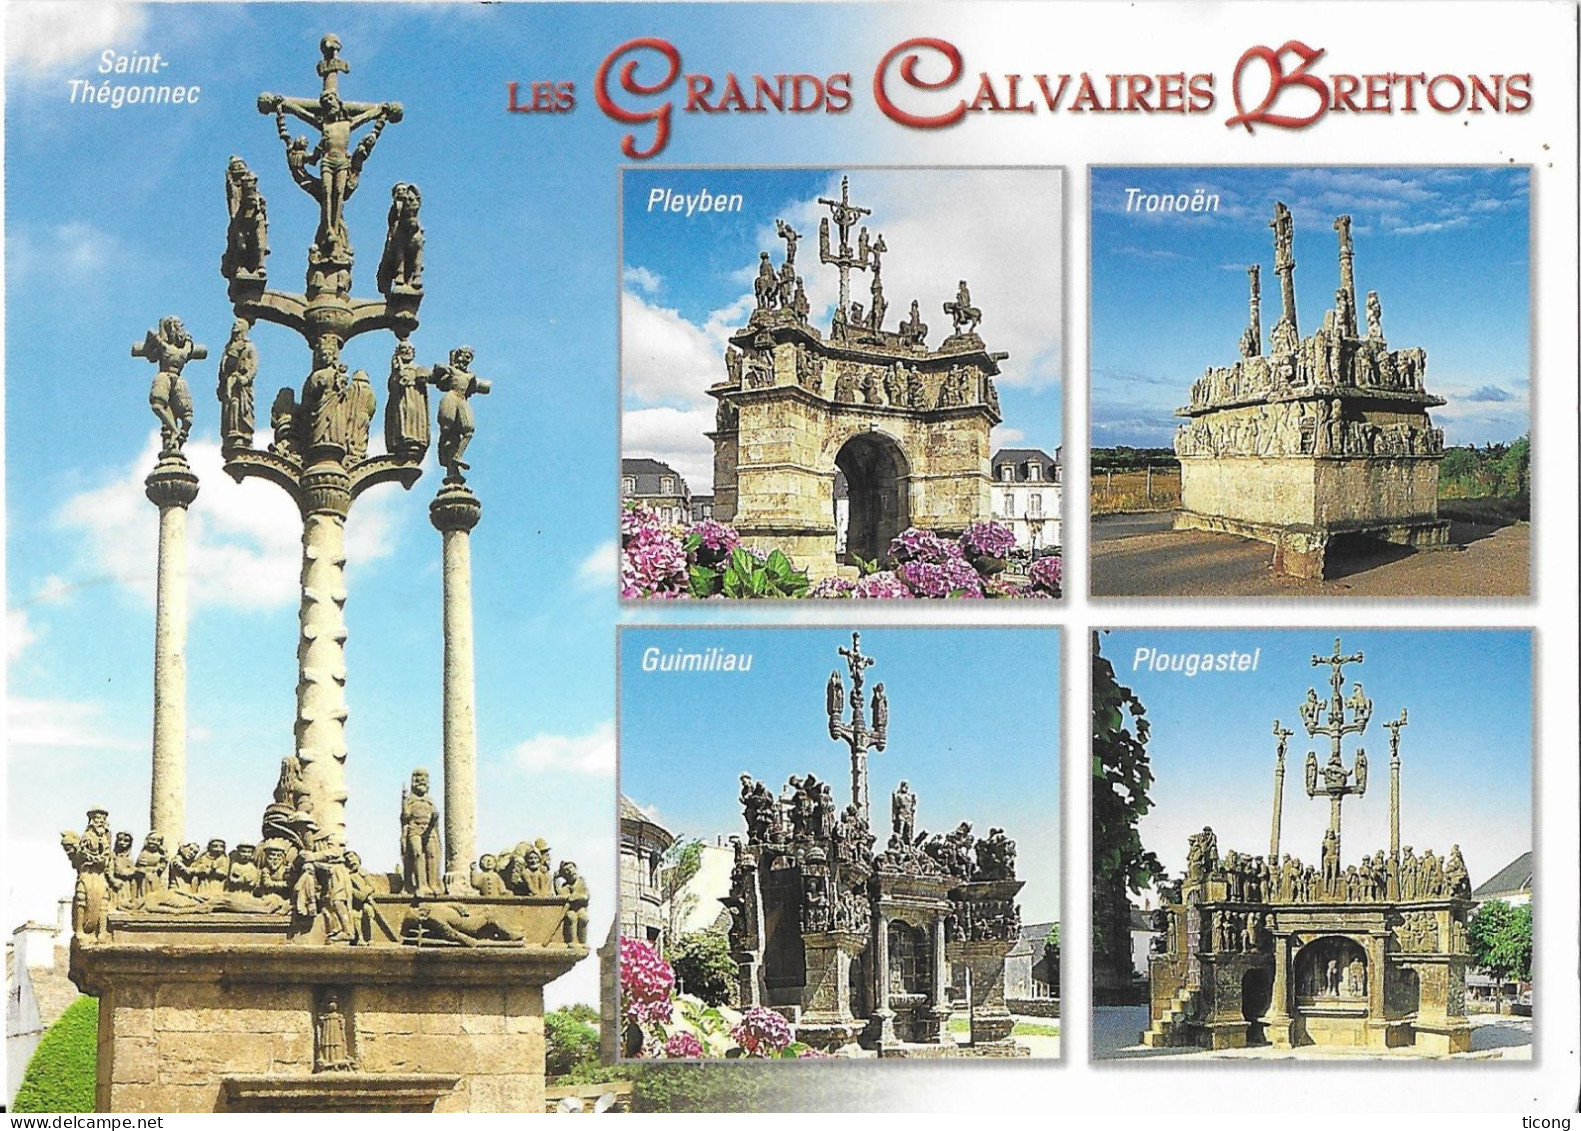 GRANDS CALVAIRES BRETONS DES EDITIONS LE DOARE CHATEAULIN ( TRONOEN, PLEYBEN, PLOUGASTEL, GUILMINAU, SAINT THEGONNEC ) - Monumenten